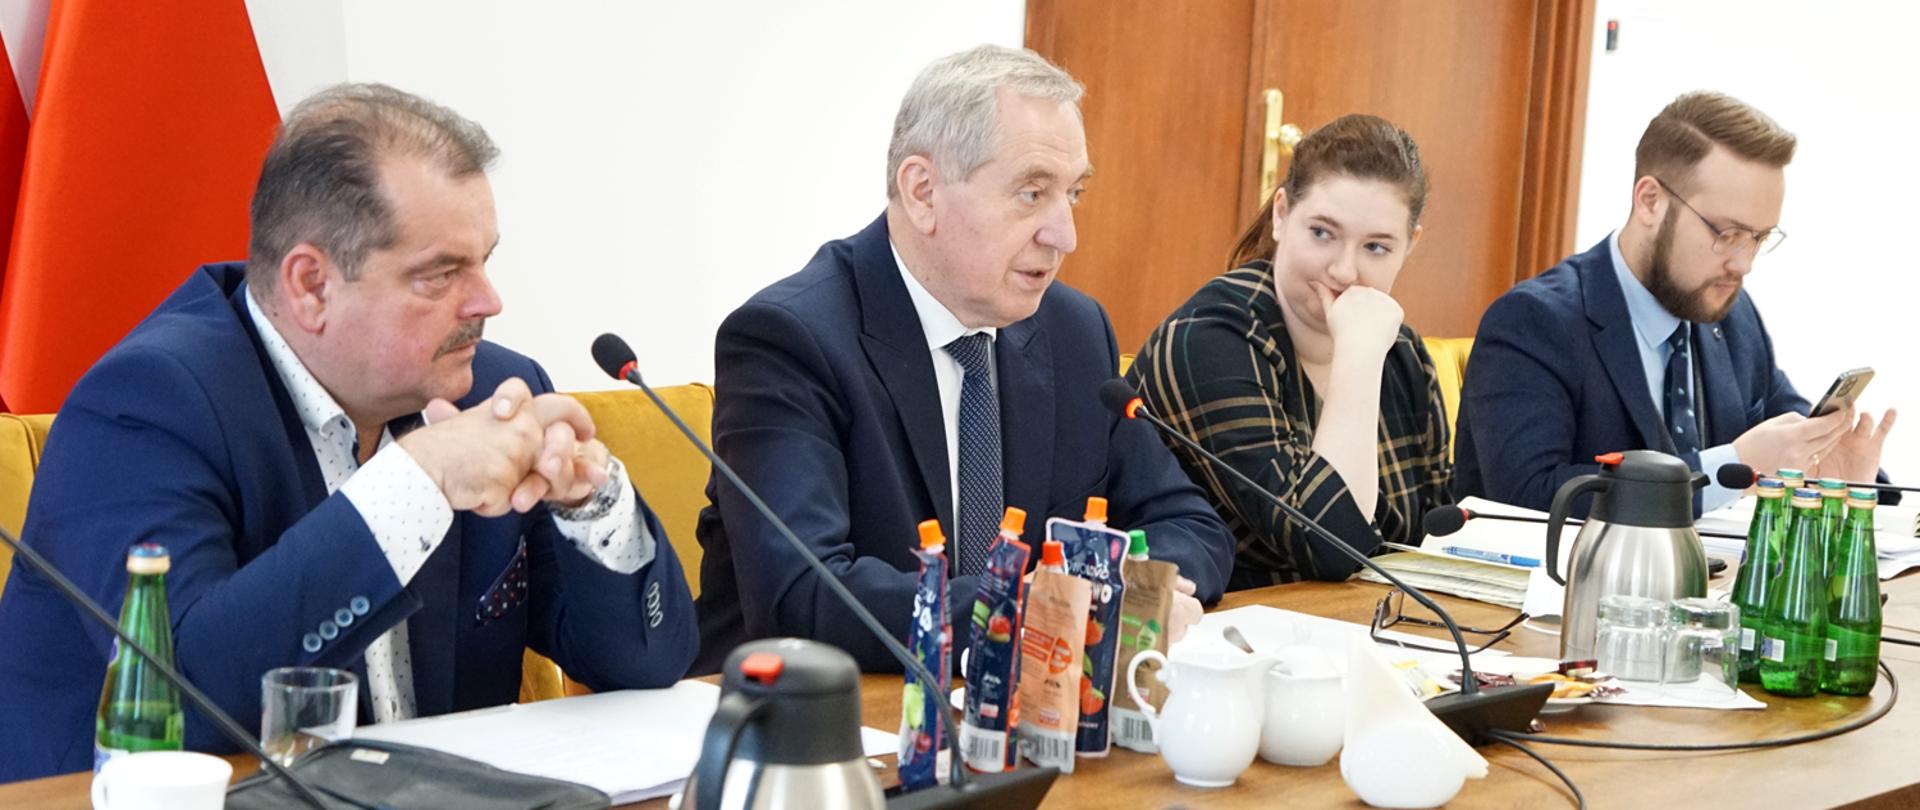 Przewodniczący Sławomir Izdebski, wicepremier Henryk Kowalczyk oraz sekretarz stanu Anna Gembicka, siedzący przy stole prezydialnym